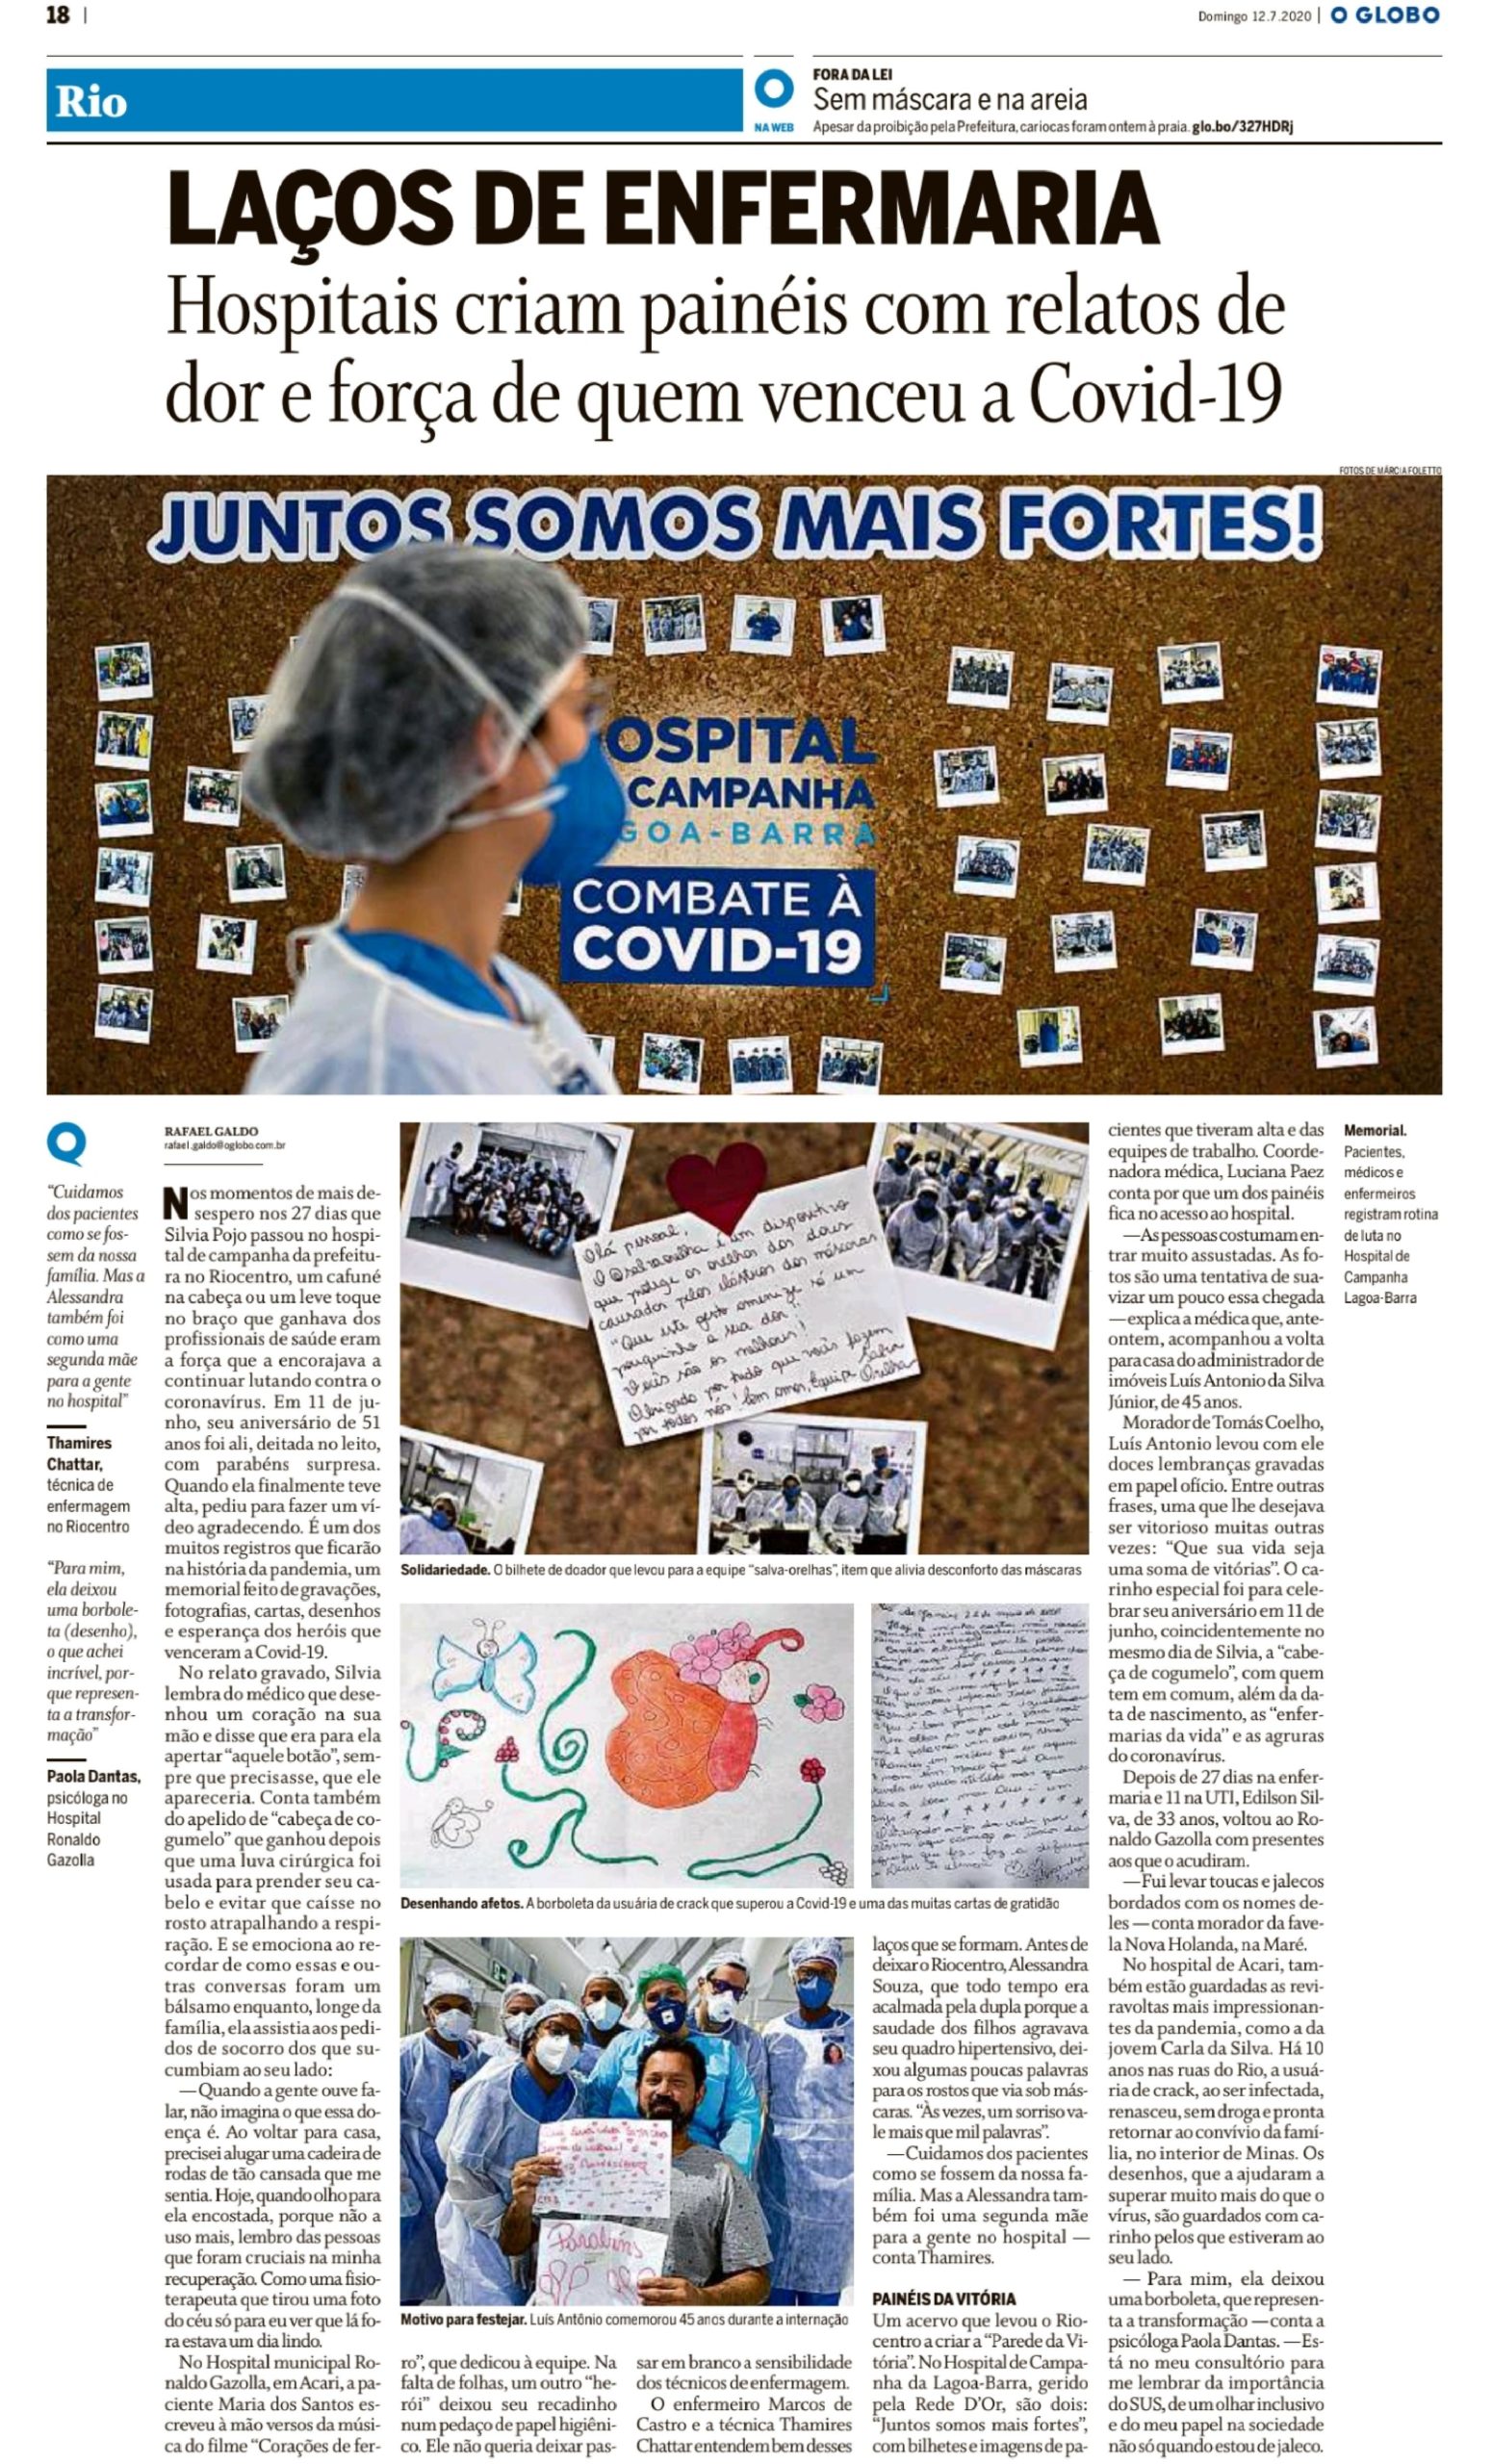 Reprodução / Jornal O Globo